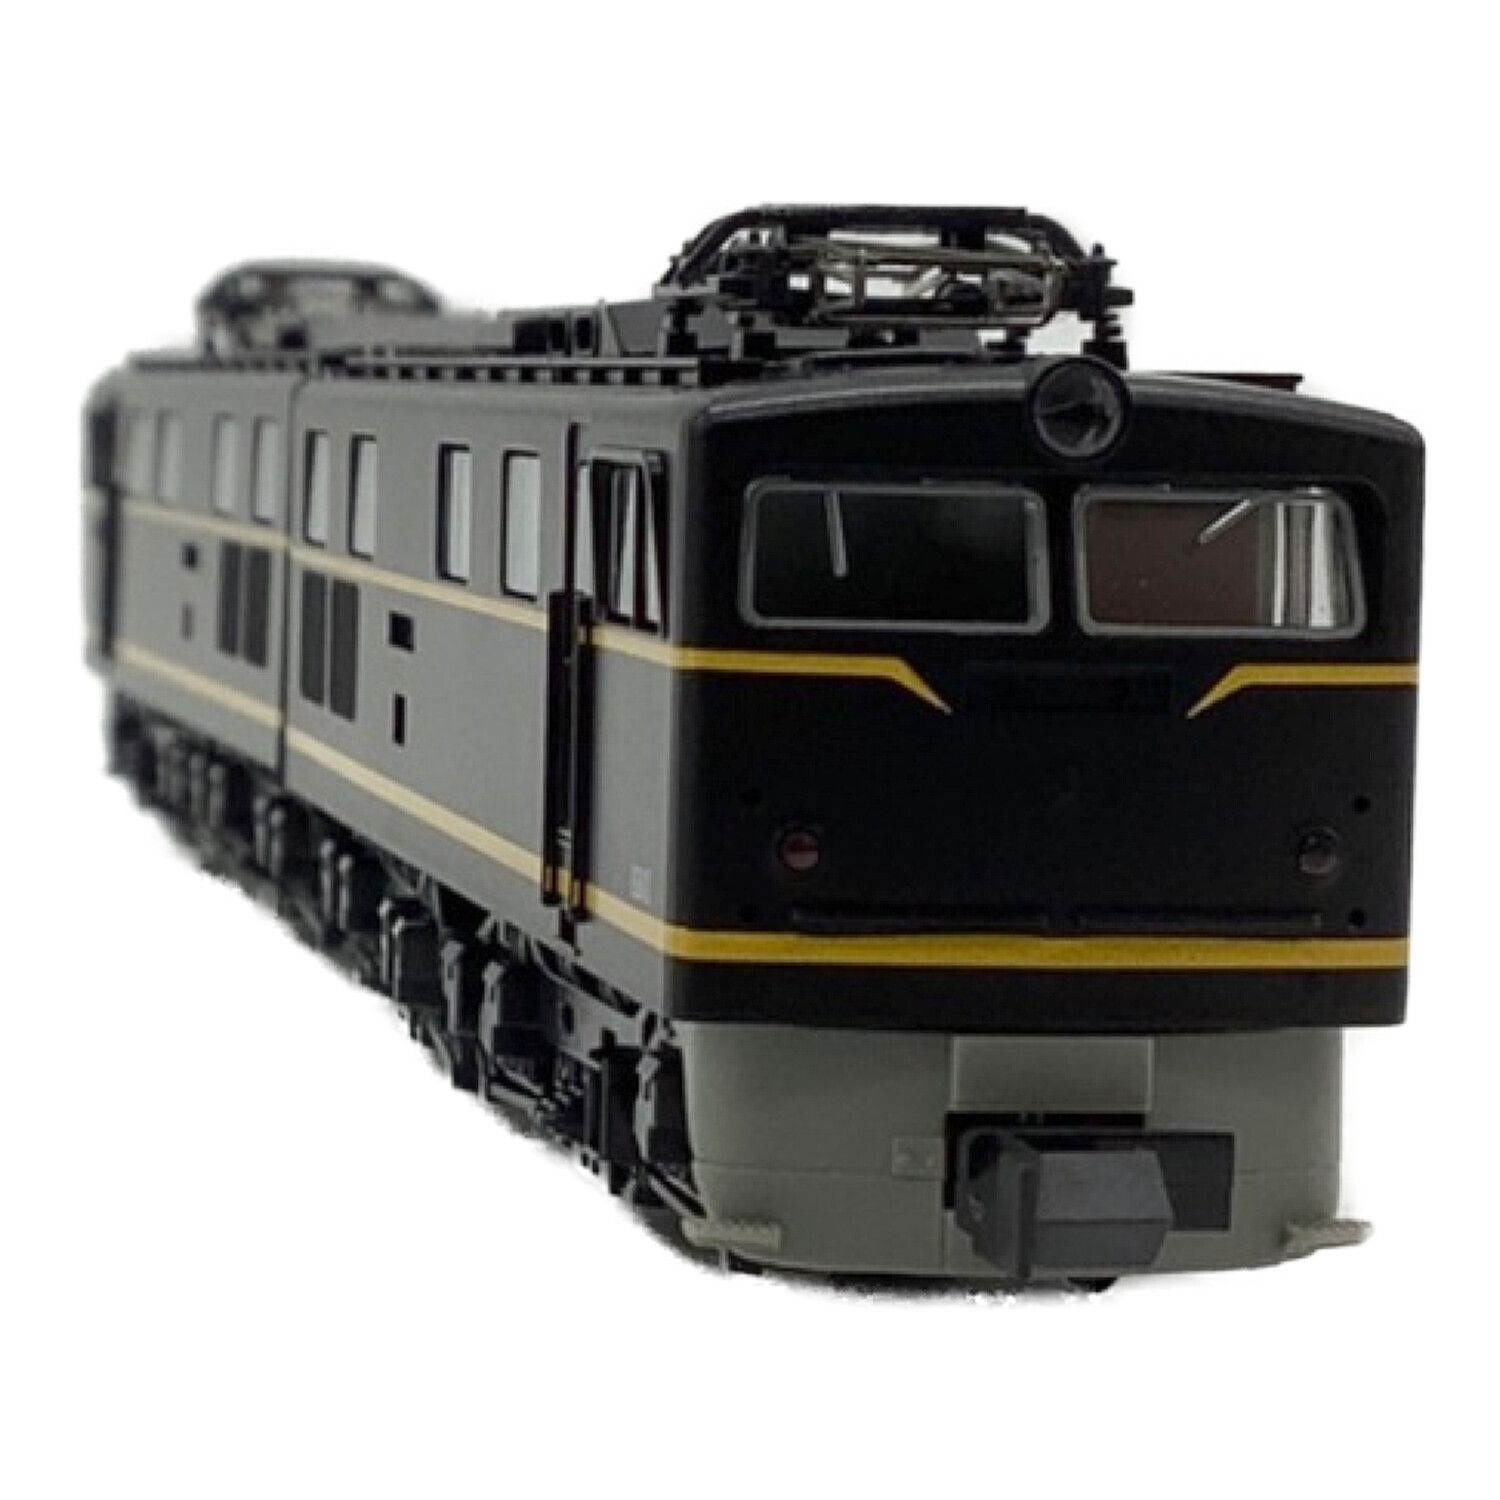 305s】EH10-18号機 電気機関車 - 鉄道模型